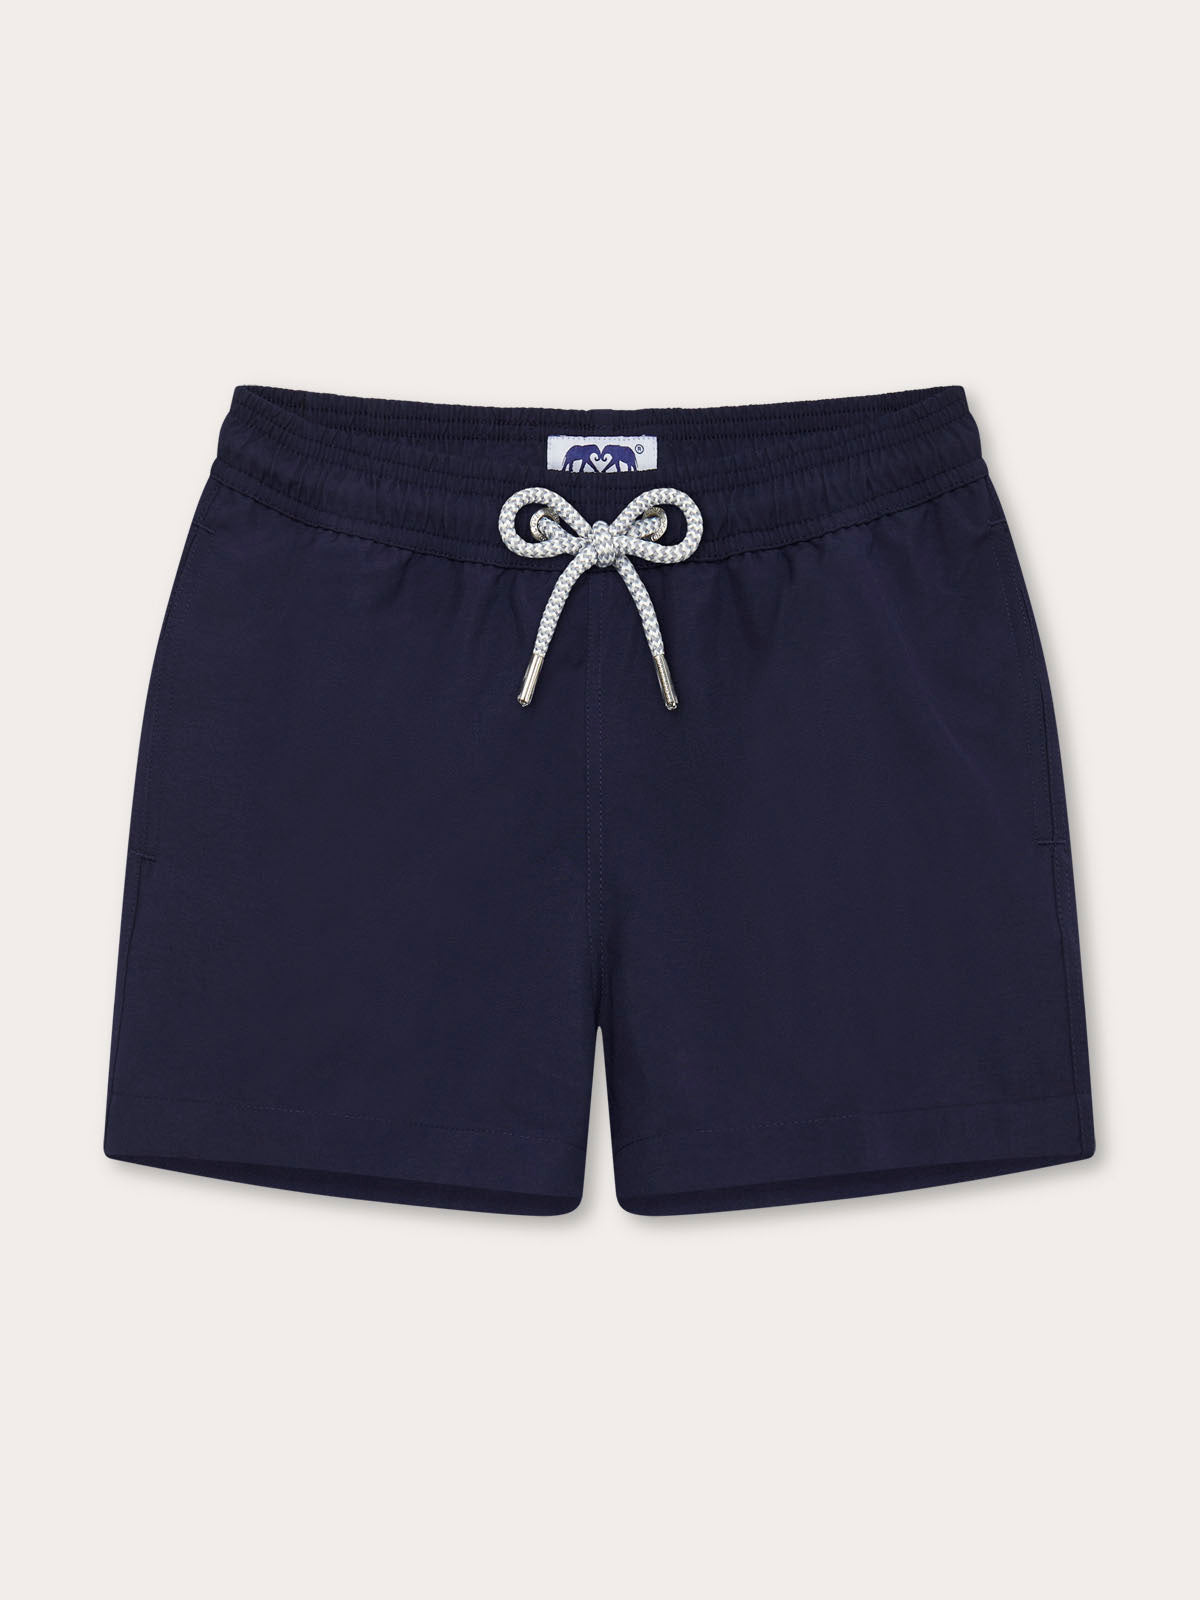 Boys Navy Blue Staniel Swim Shorts